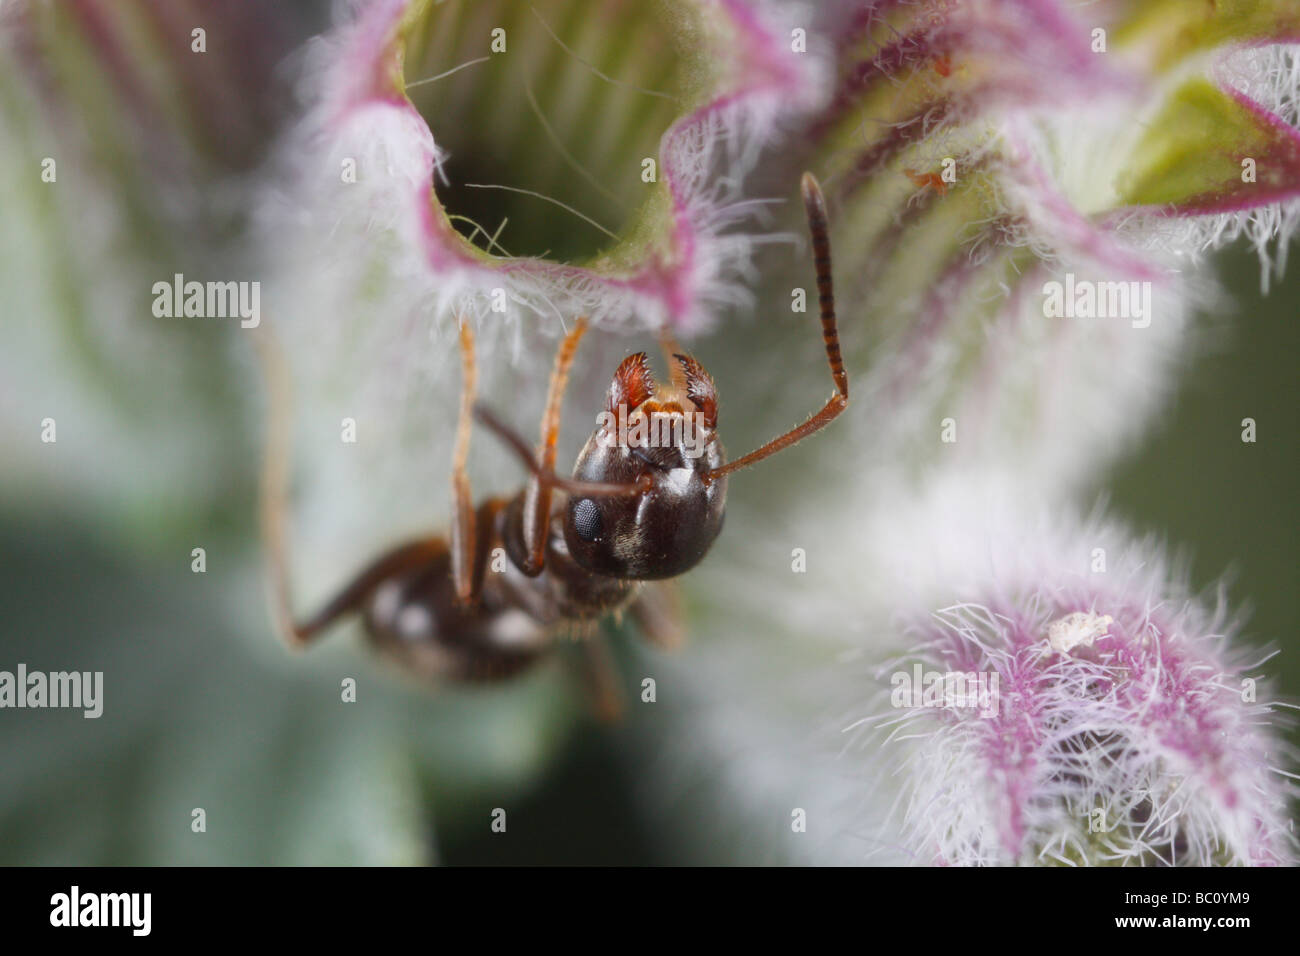 Lasius niger, il giardino nero ant, su erba gatta fiore. Questa è una estrema closeup. Foto Stock